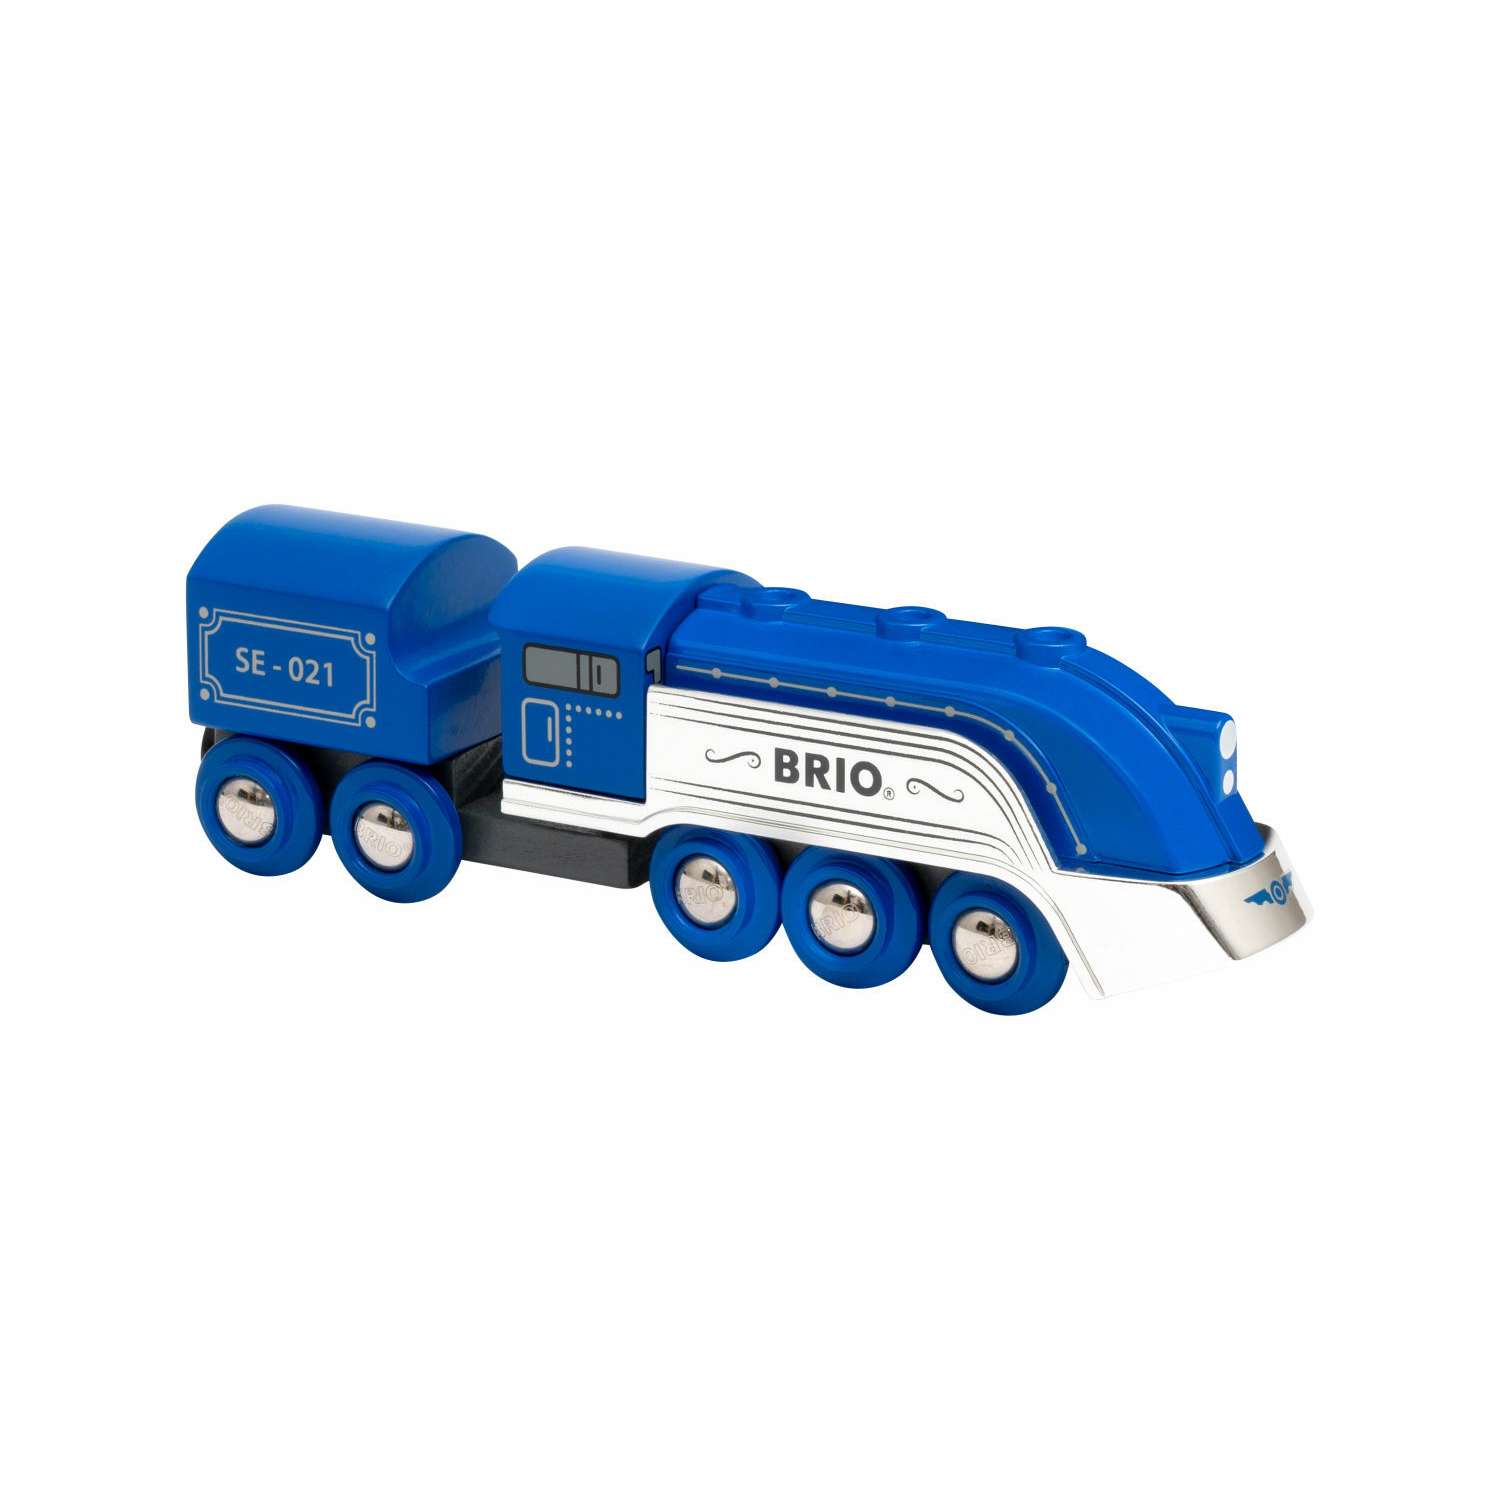 Поезд BRIO Special Edition синий с серебром и 1 вагончик 33642 - фото 1